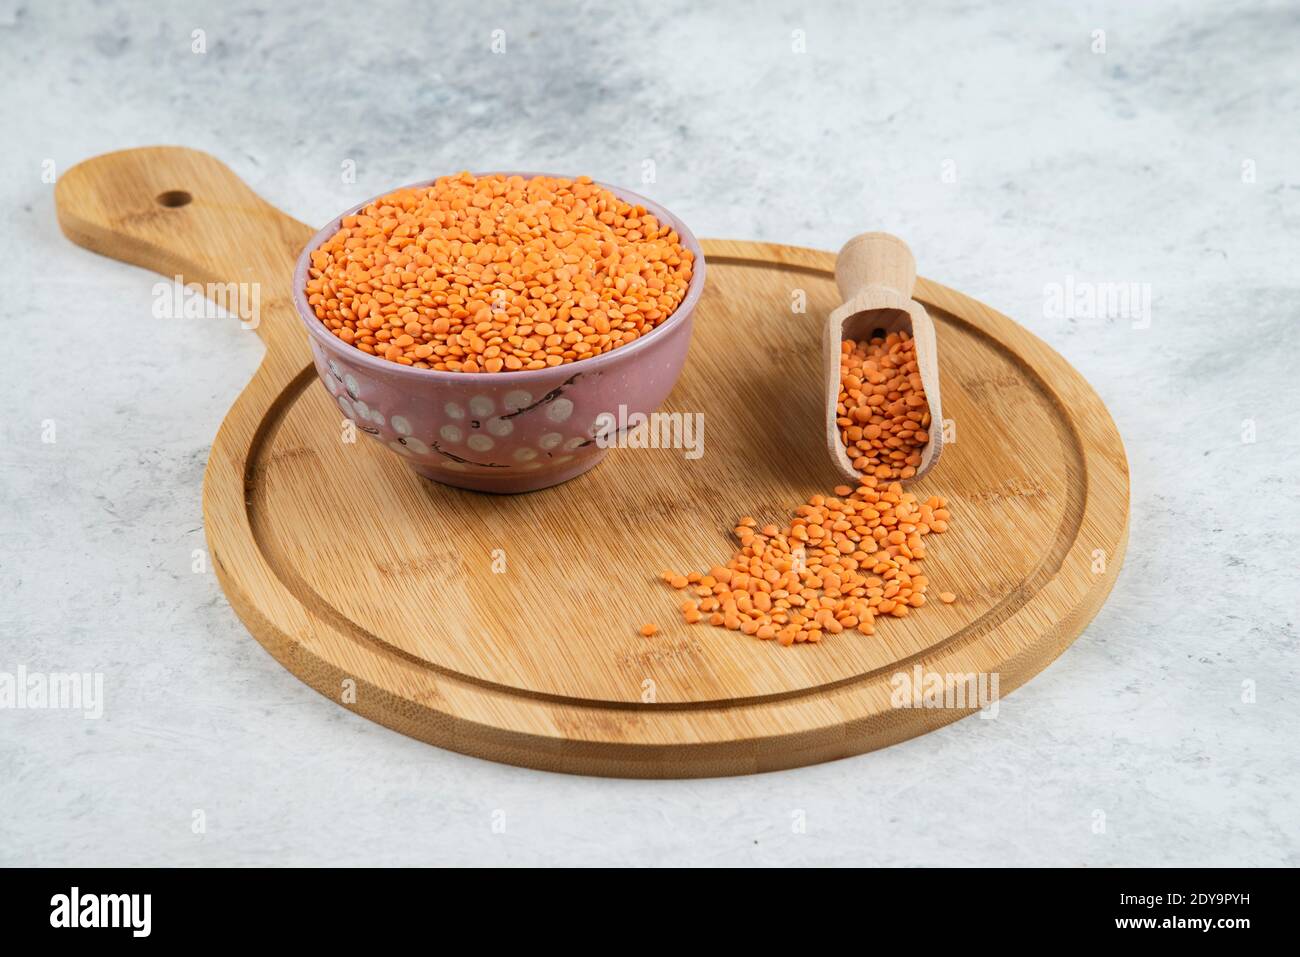 Ciotola di lenticchie rosse grezze e cucchiaio sul tagliere Foto Stock